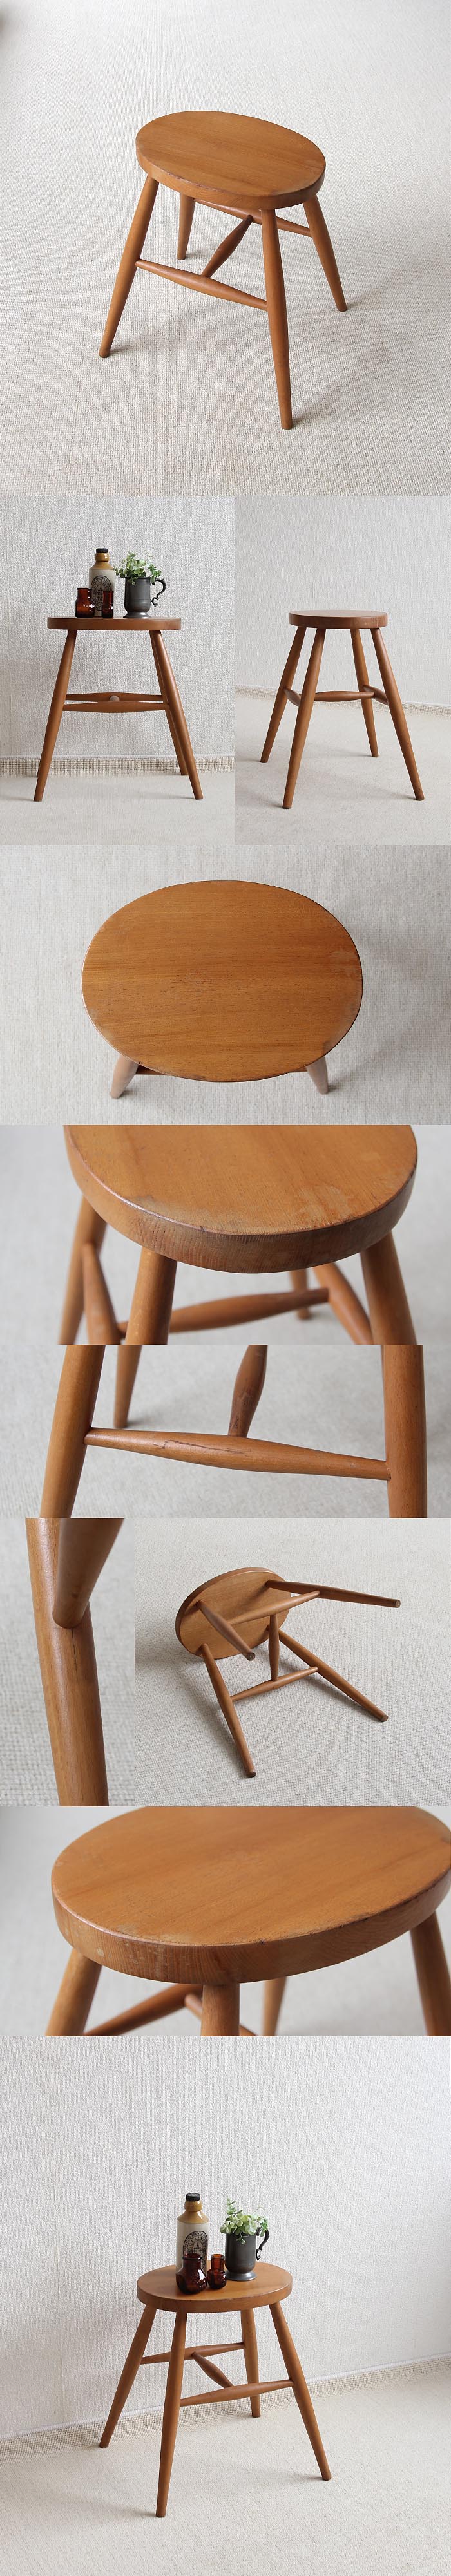 イギリス ヴィンテージ スツール 木製椅子 カントリー 無垢材 英国 家具「花台にも」V-473